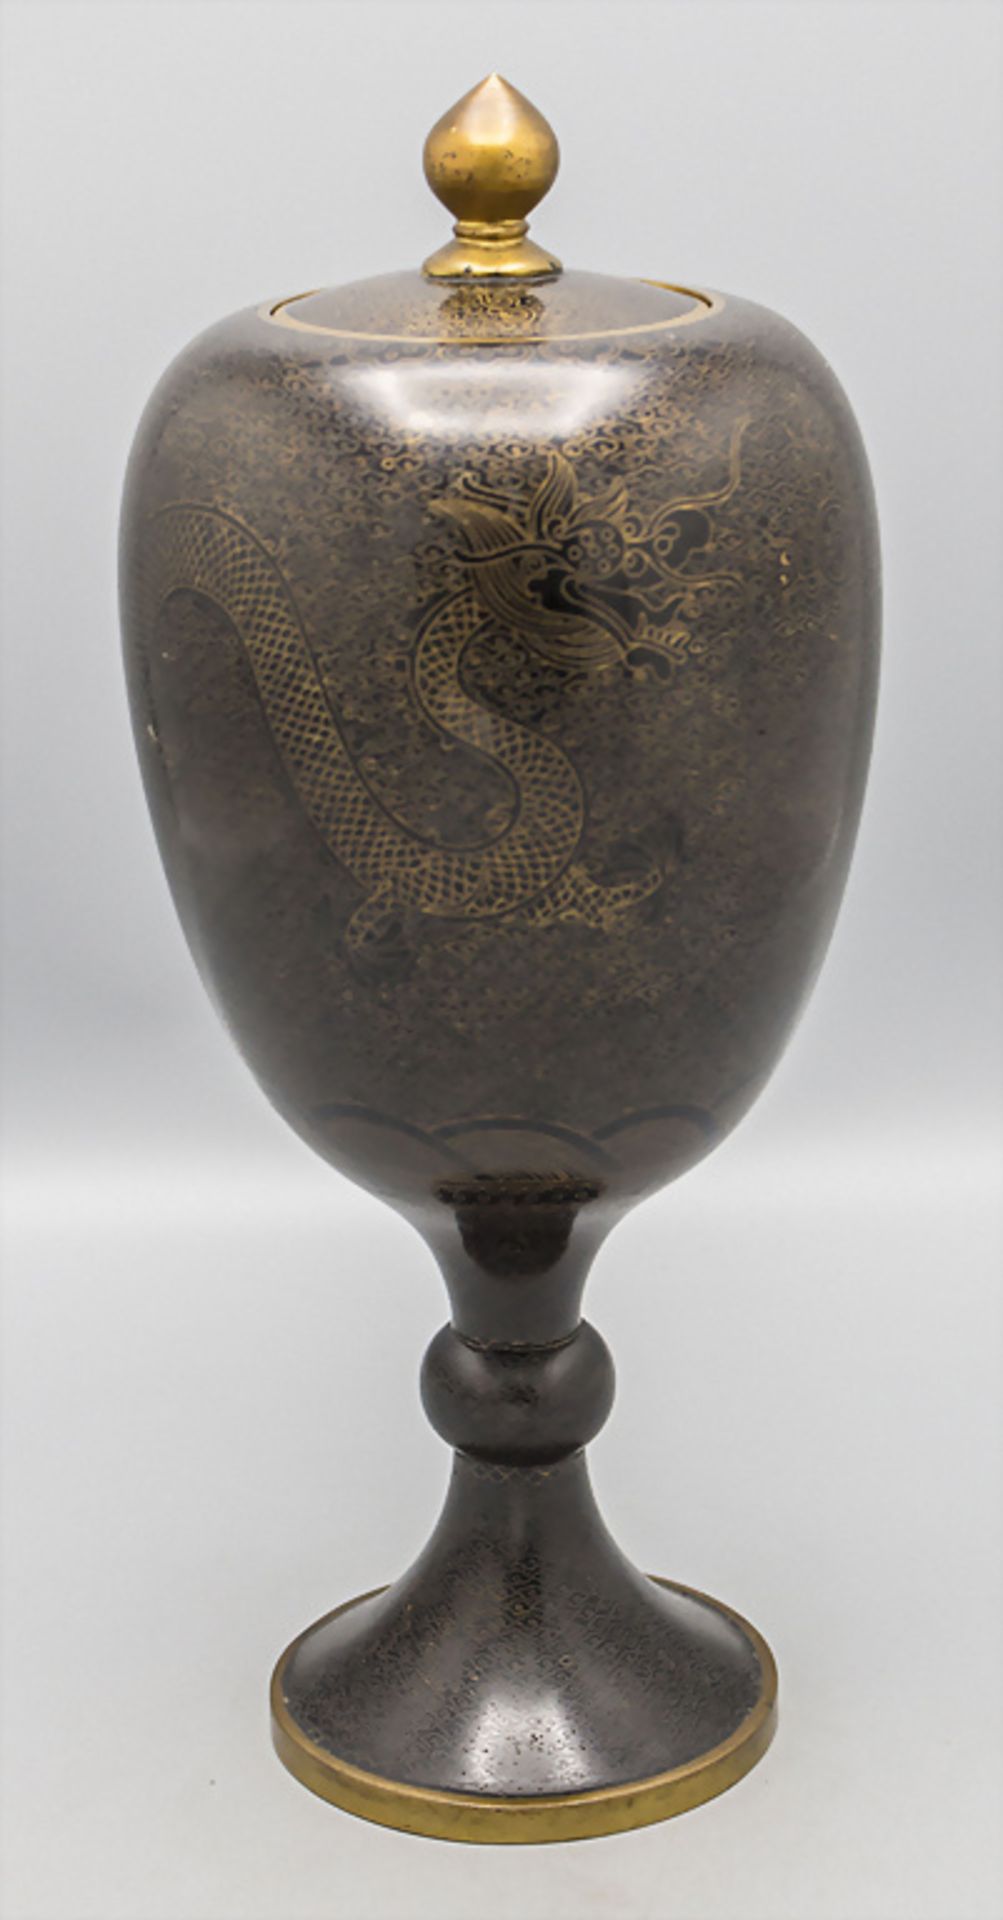 Cloisonné-Deckelvase / A cloisonné lidded vase, China, späte Qing Dynastie (1644-1911)